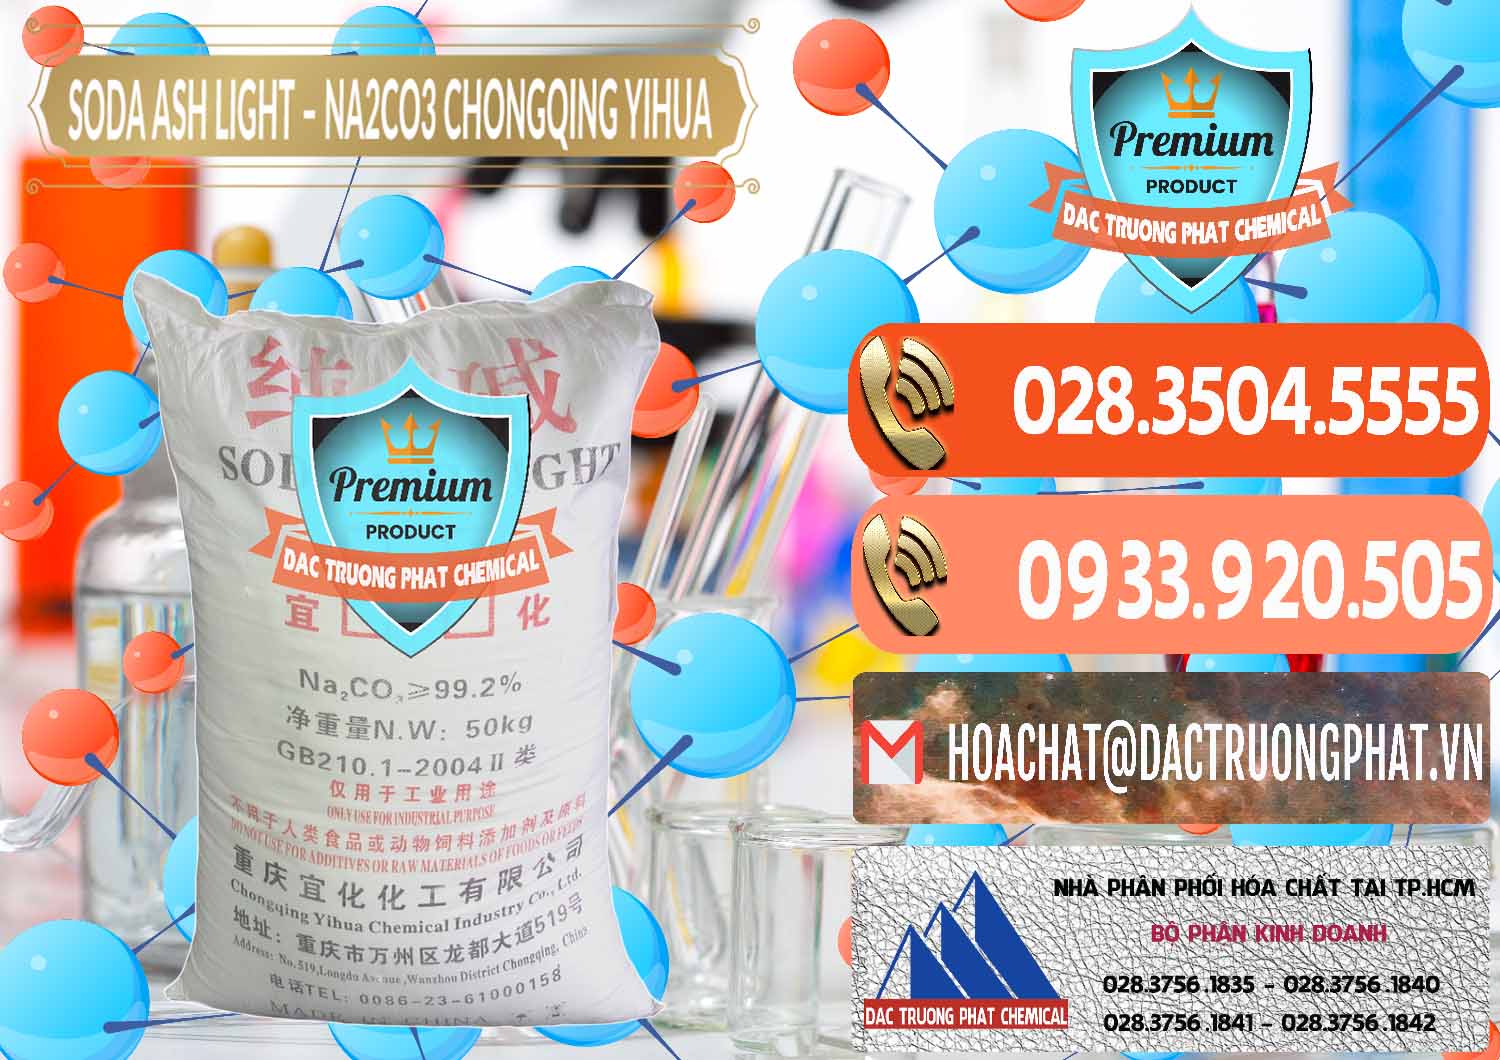 Cung cấp và bán Soda Ash Light - NA2CO3 Chongqing Yihua Trung Quốc China - 0129 - Công ty chuyên bán & cung cấp hóa chất tại TP.HCM - hoachatmientay.com